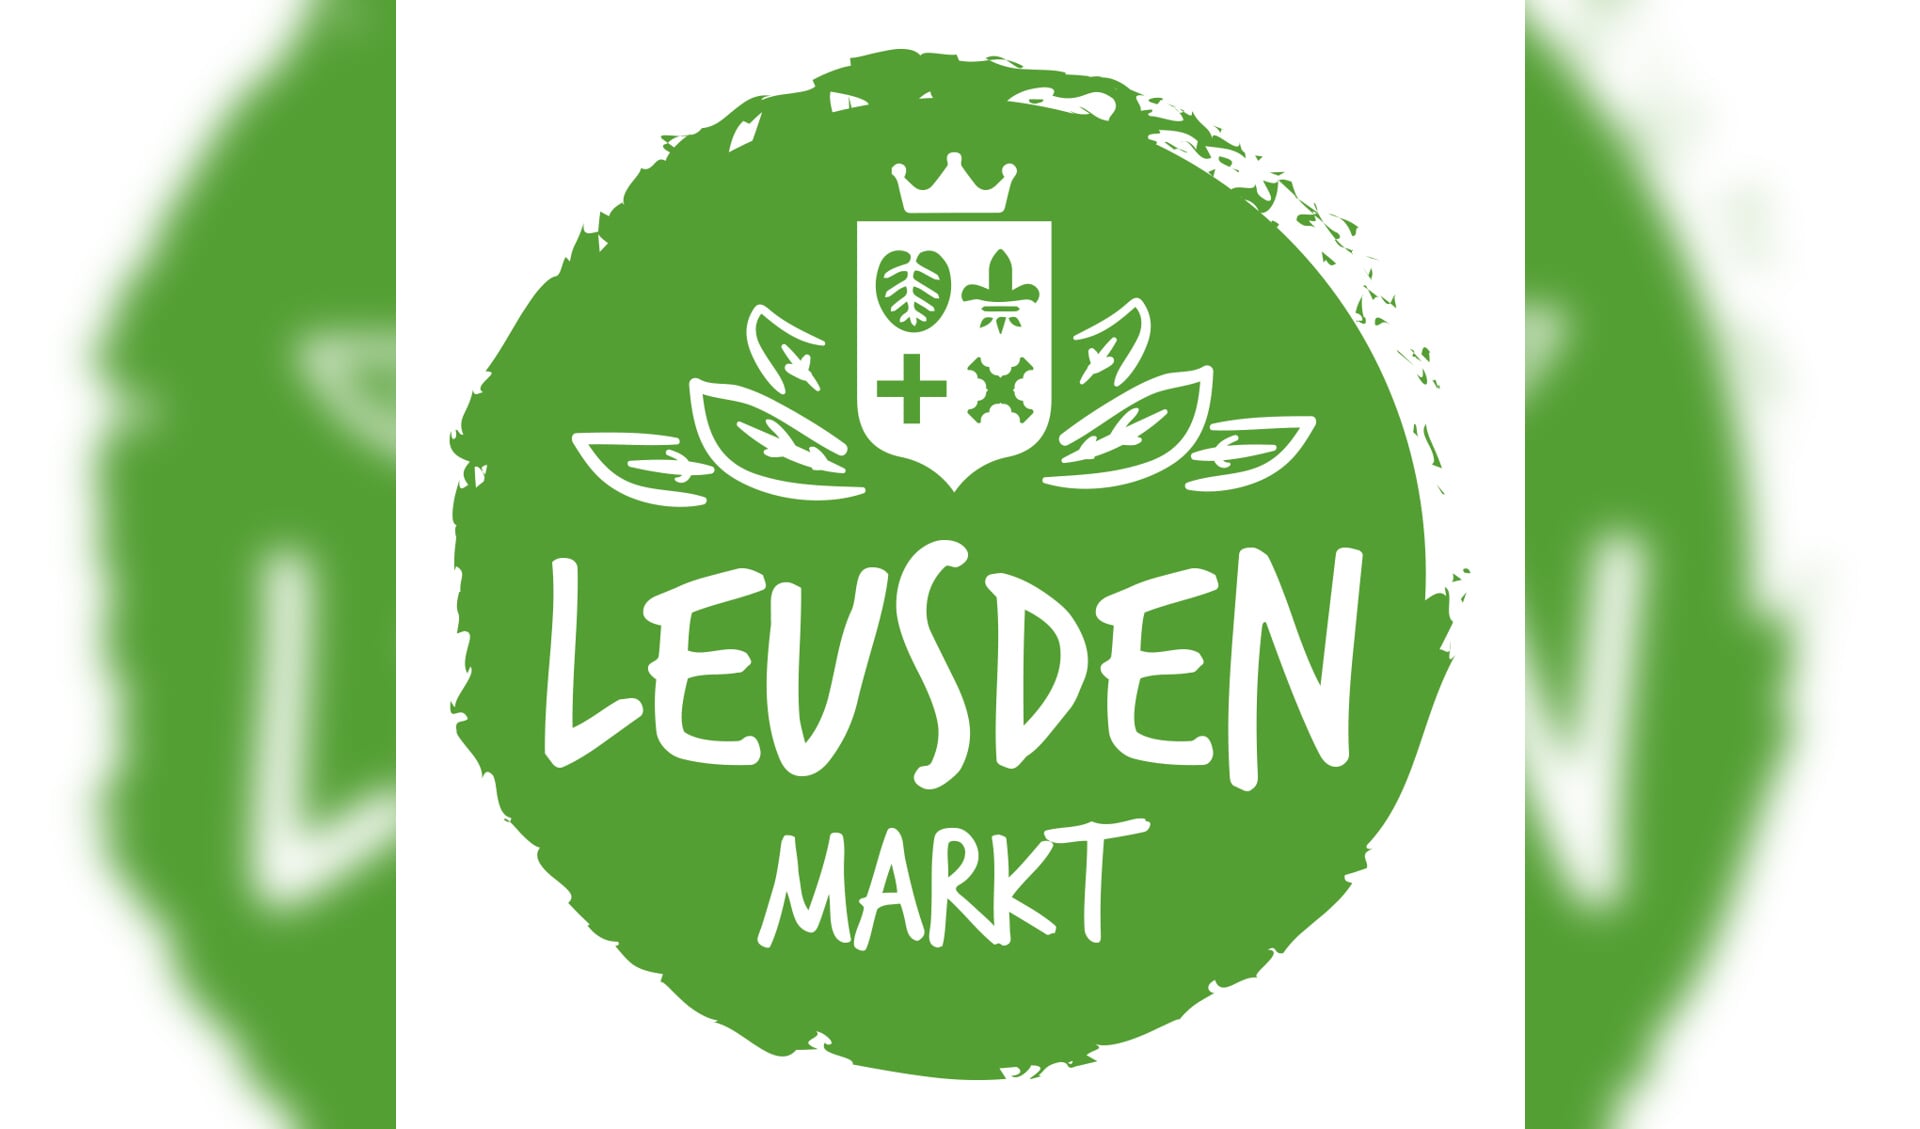 Het logo van de markt Leusden